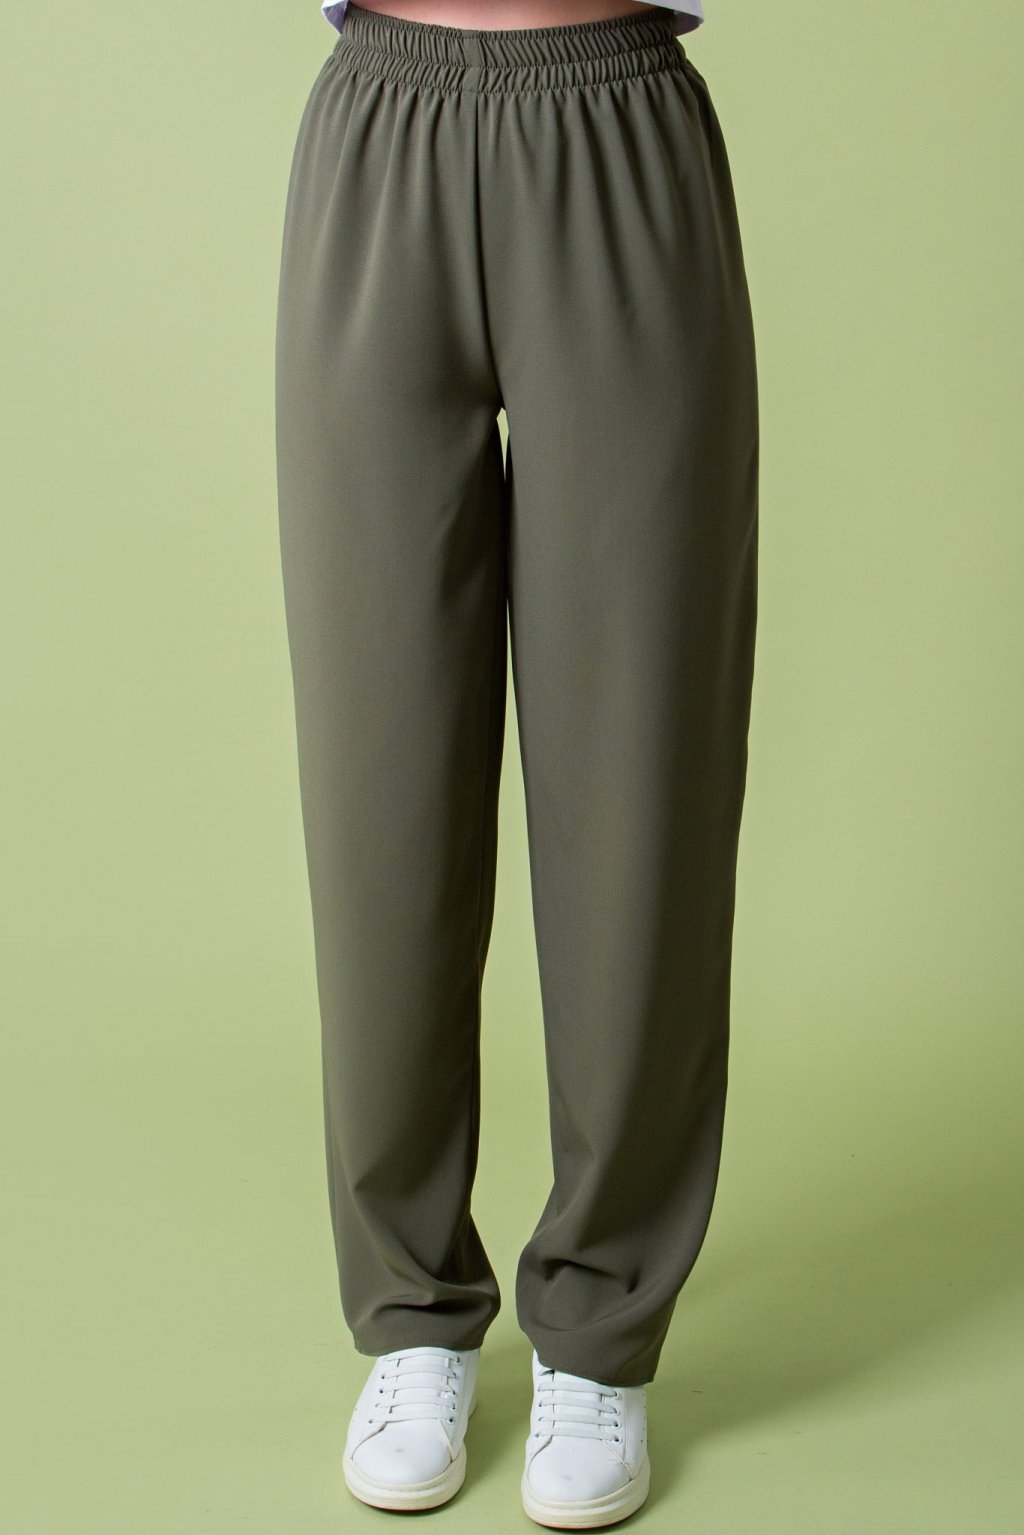 Свободные брюки цвета хакки Бр-43-1 - 4